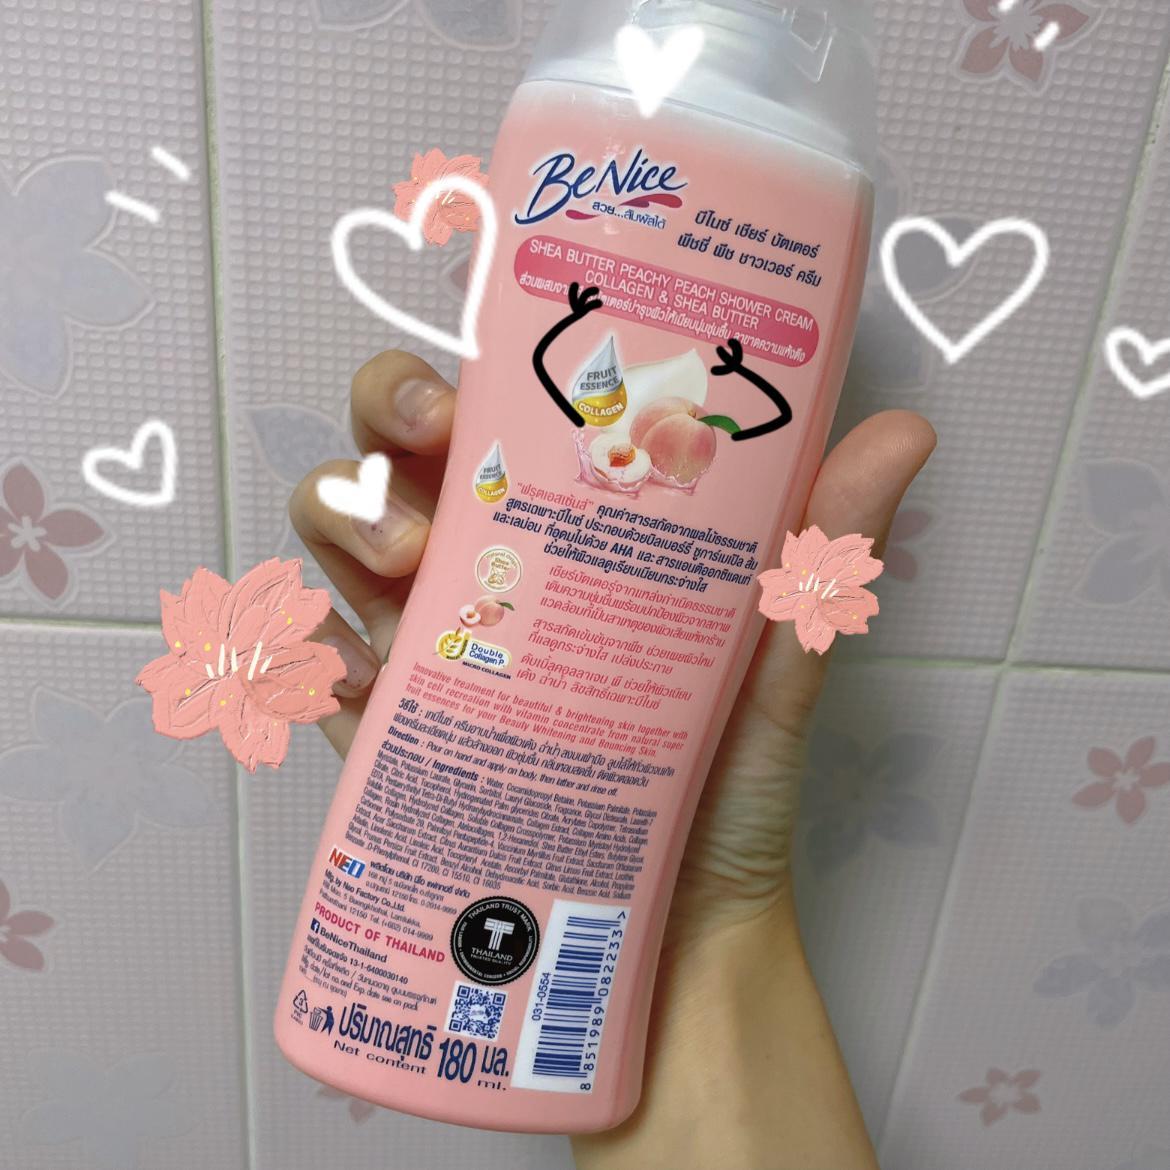 ภาพหน้าปก กลิ่นพีชแตะจมูก สะอาดหอมสดชื่อด้วย Benice Peachy Peach Shower Cream  ที่:1